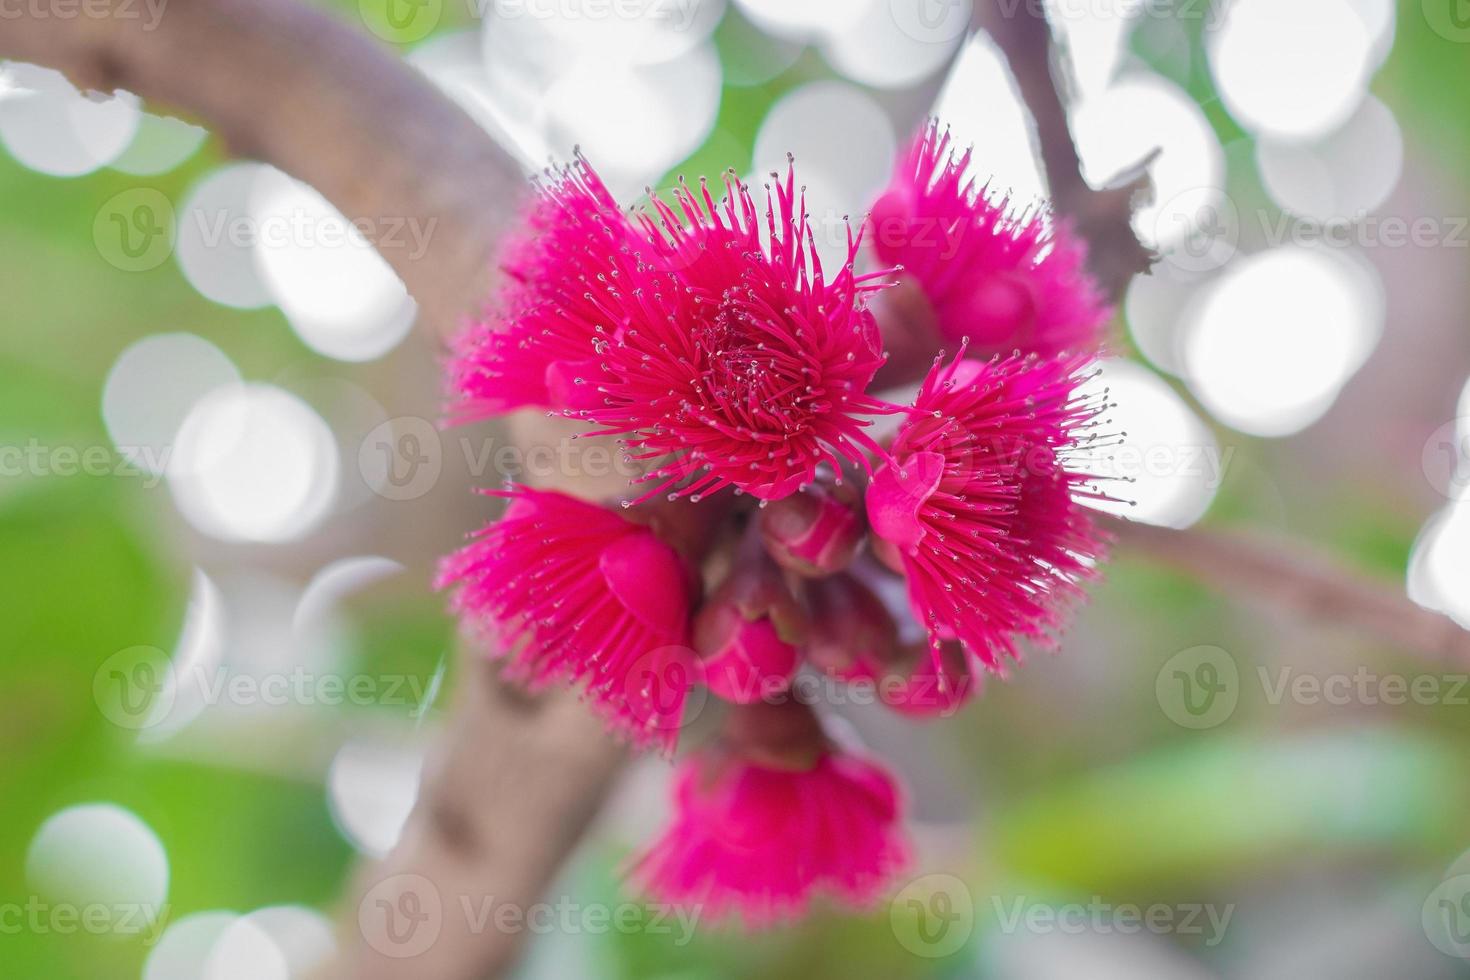 syzygium malaccense o pomerac es una fruta tropical en tailandia. su flor es de color rosa intenso. florece a principios de verano, dando frutos tres meses después. foto